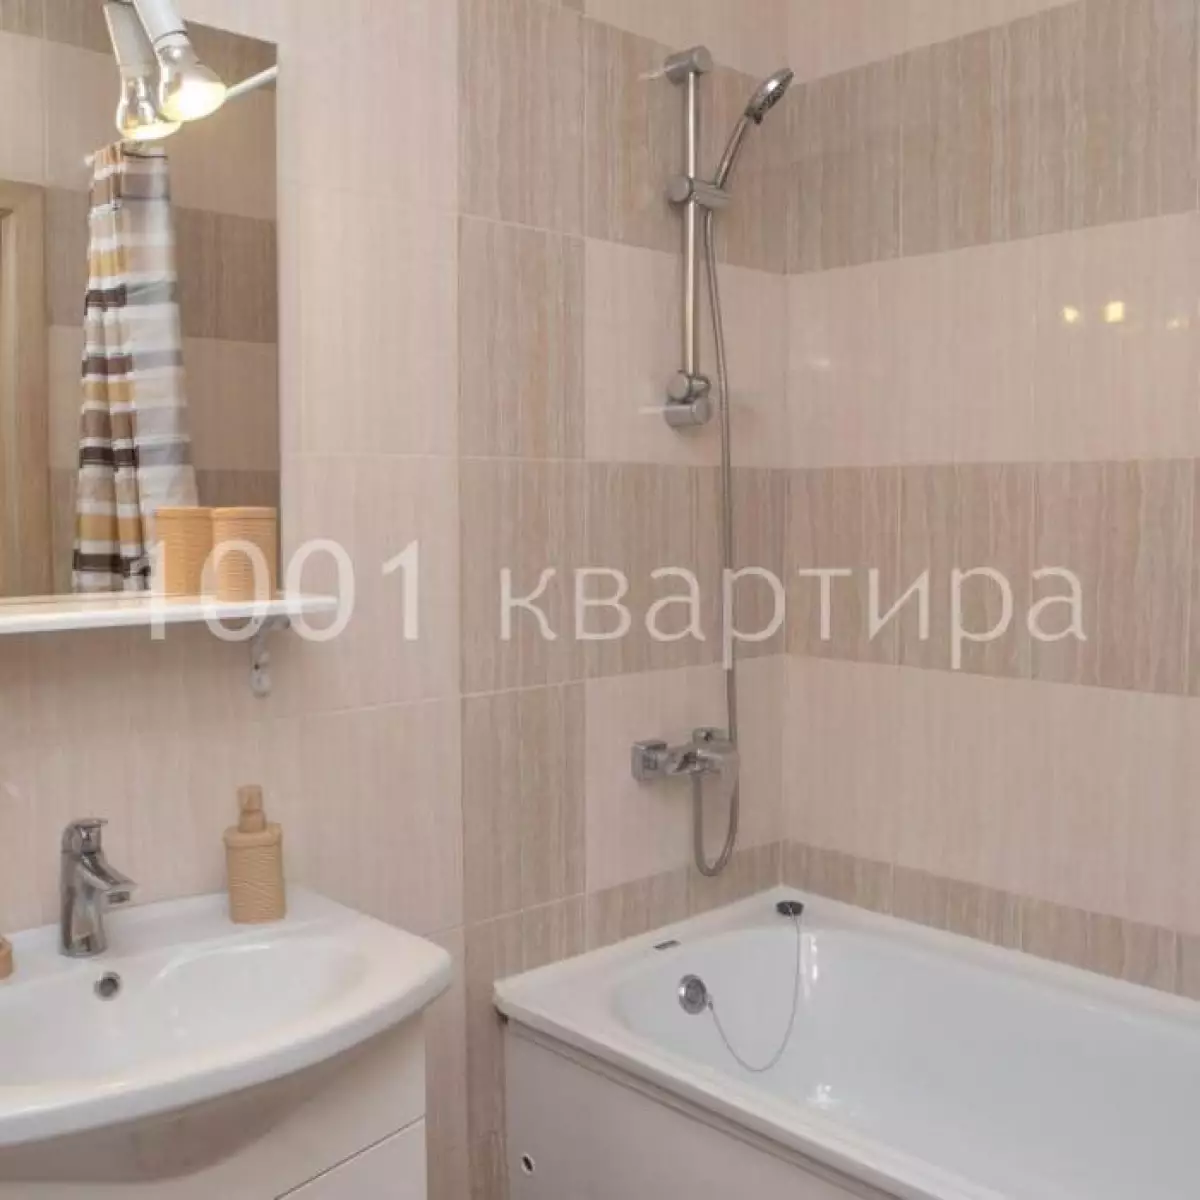 Вариант #124826 для аренды посуточно в Казани Чистопольская, д.72 на 5 гостей - фото 9